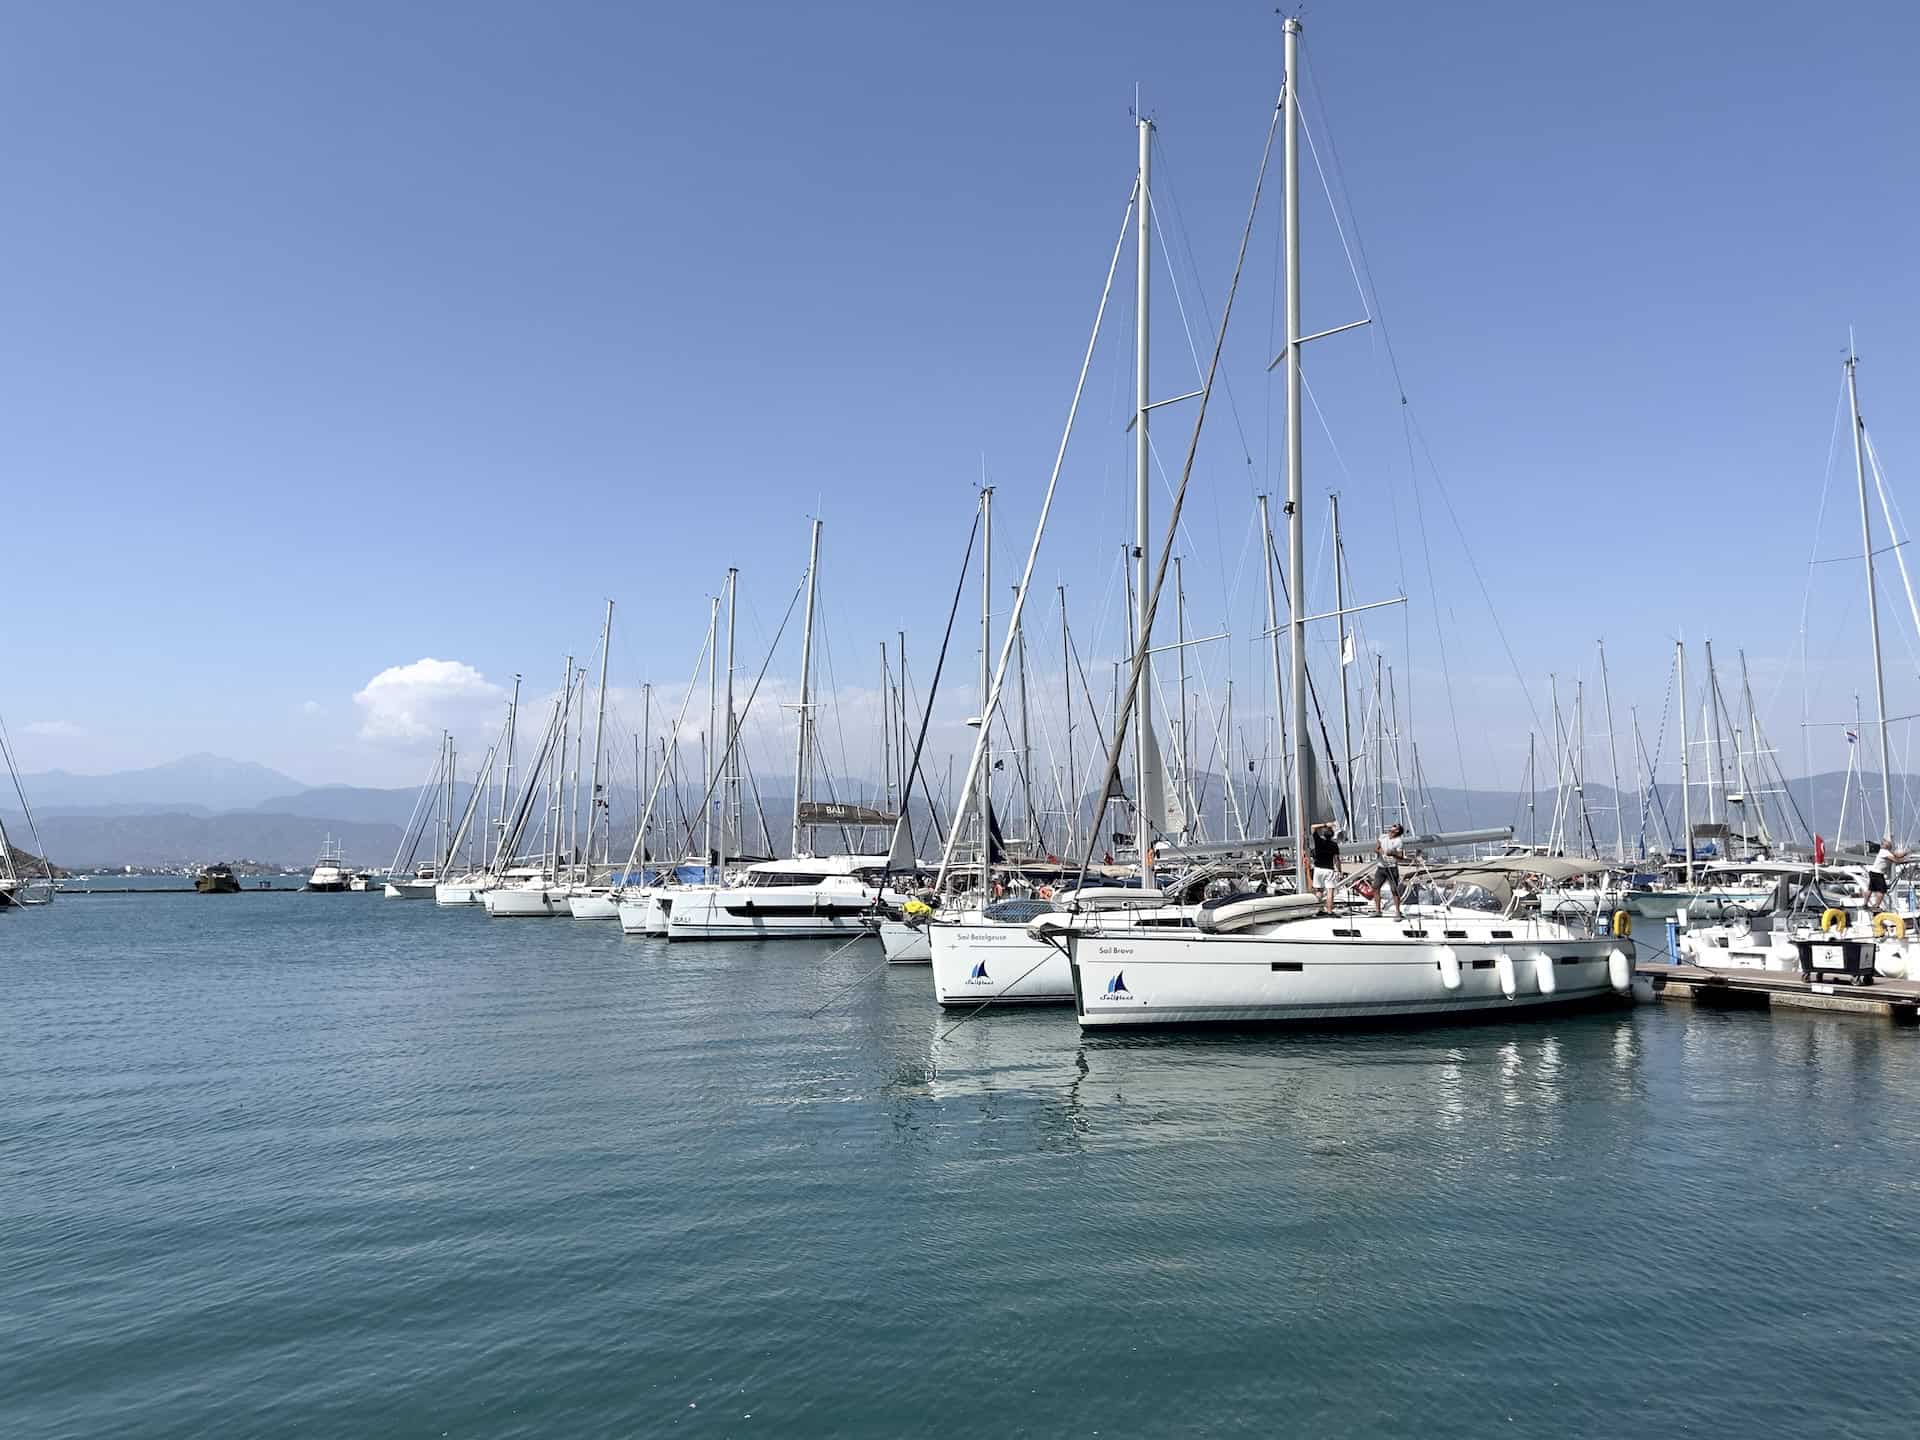 Yachts at Ece Marina in Fethiye, Turkey